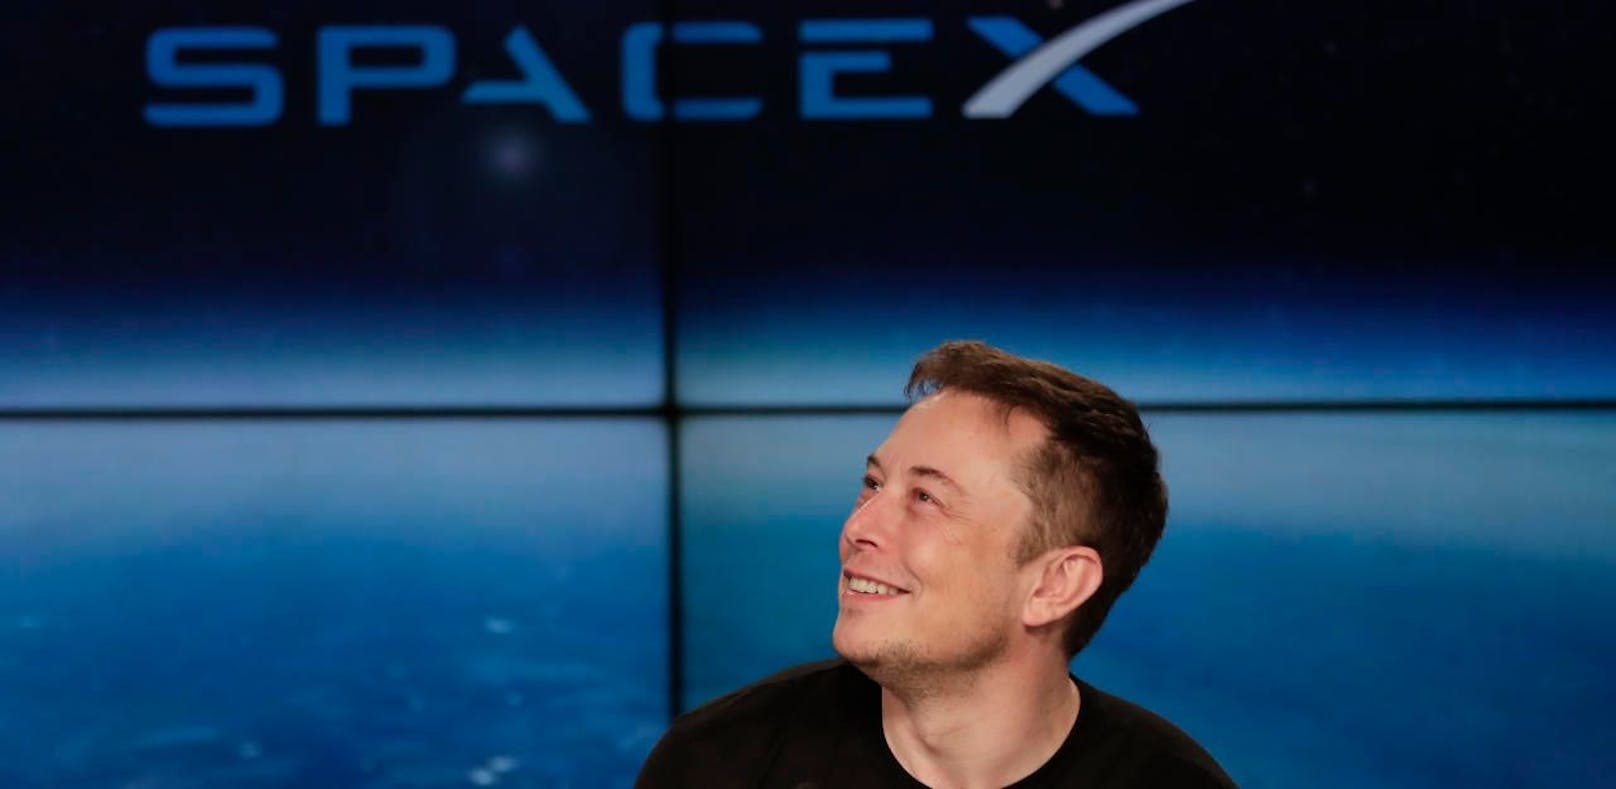 Elon Musk aktiviert Starlink-Satelliten für die Ukraine